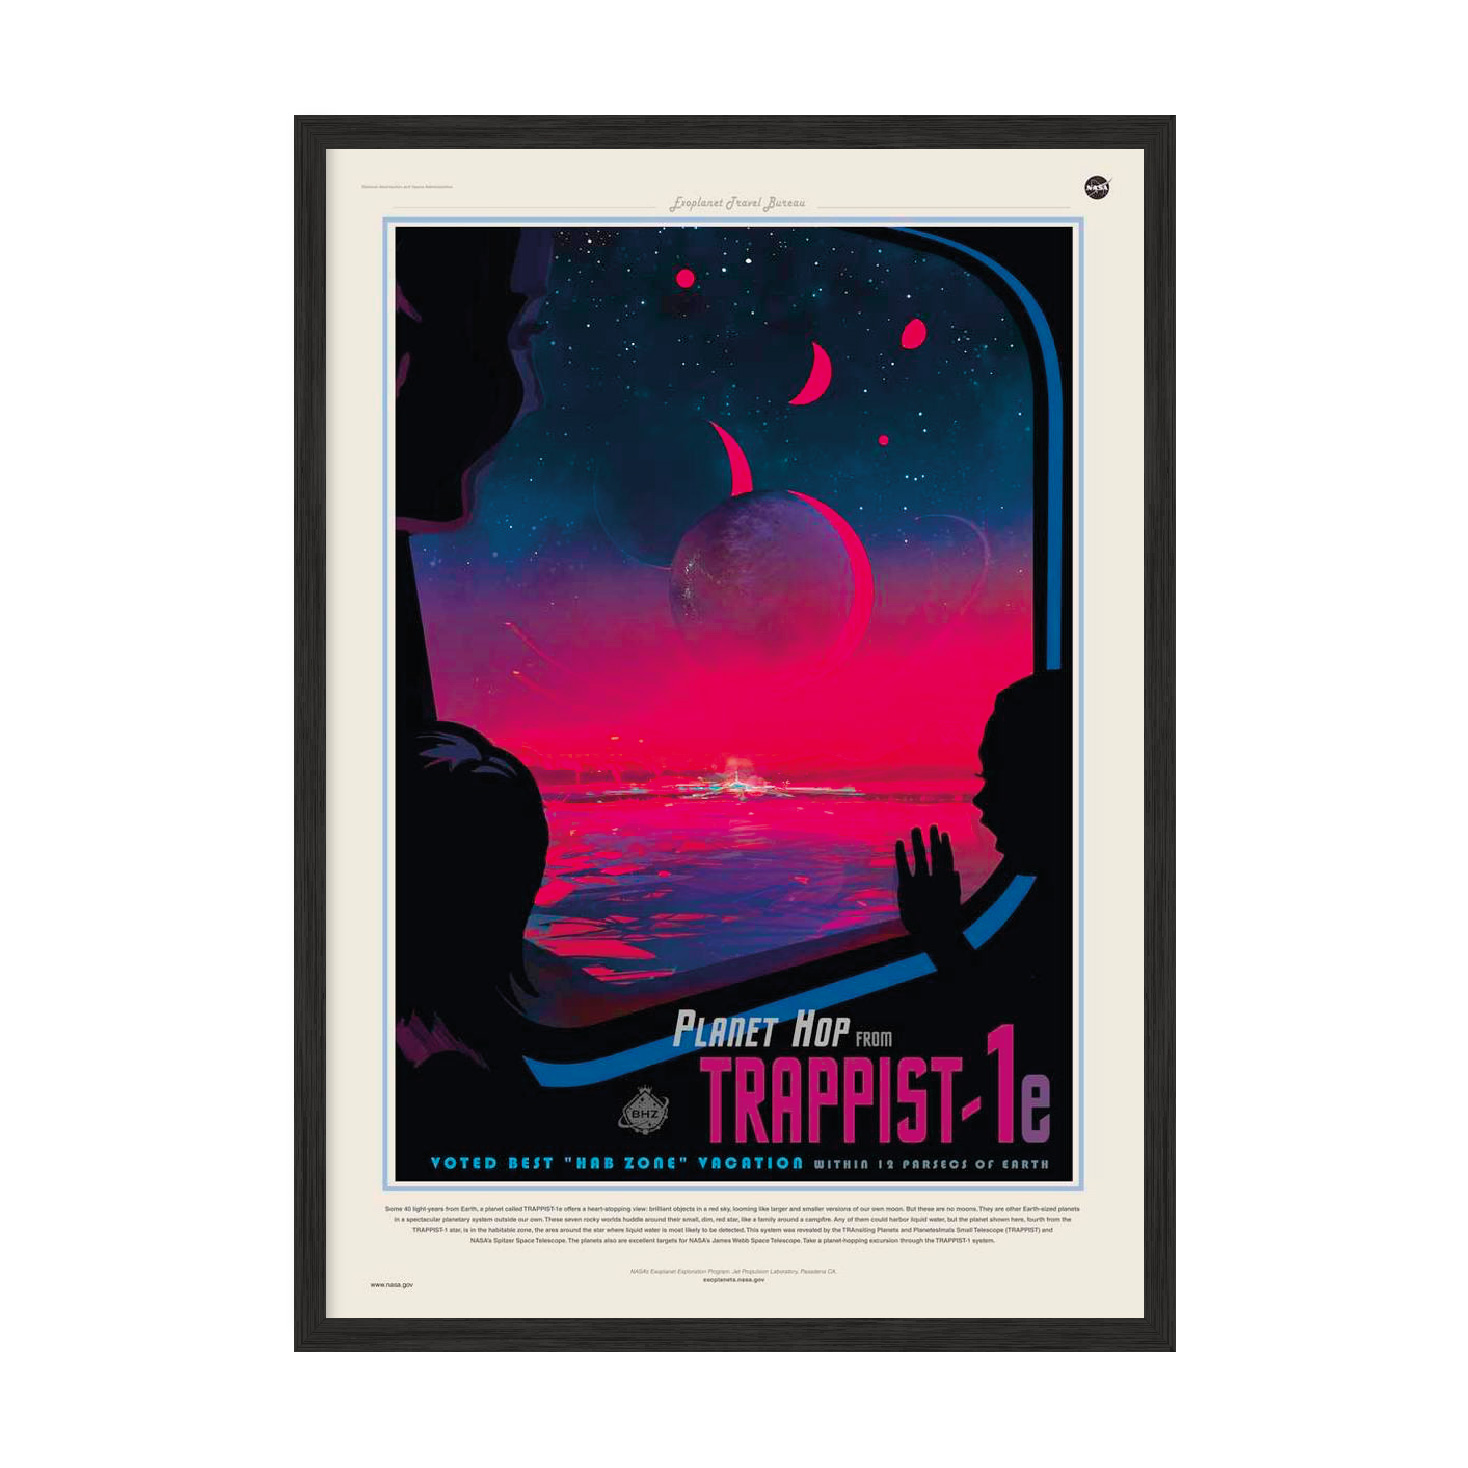 Постер "Trappist 1e"